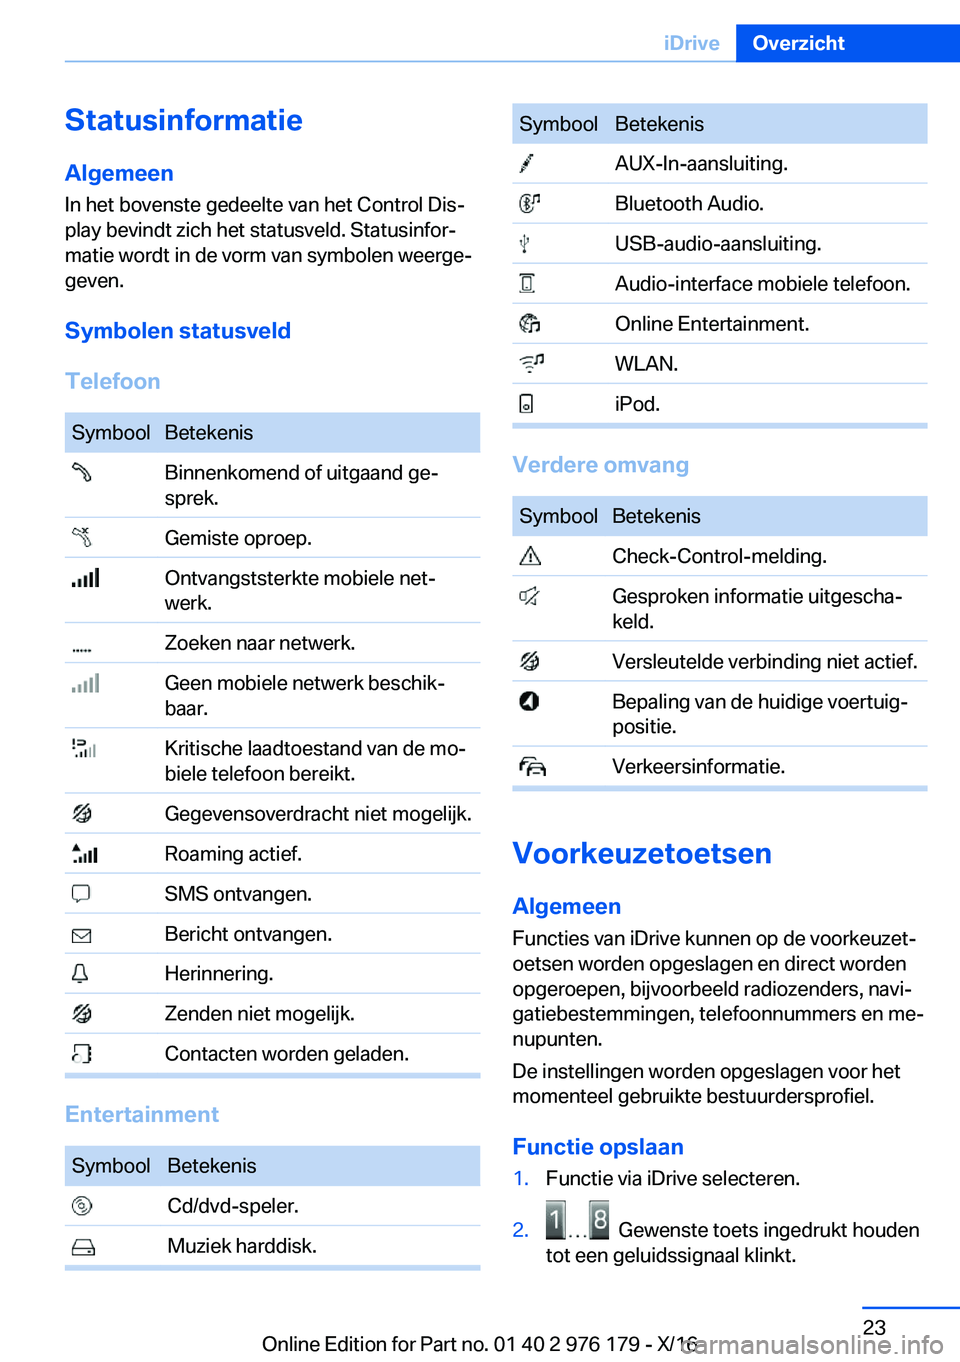 BMW X5 M 2017  Instructieboekjes (in Dutch) �S�t�a�t�u�s�i�n�f�o�r�m�a�t�i�e
�A�l�g�e�m�e�e�n
�I�n� �h�e�t� �b�o�v�e�n�s�t�e� �g�e�d�e�e�l�t�e� �v�a�n� �h�e�t� �C�o�n�t�r�o�l� �D�i�sj �p�l�a�y� �b�e�v�i�n�d�t� �z�i�c�h� �h�e�t� �s�t�a�t�u�s�v�